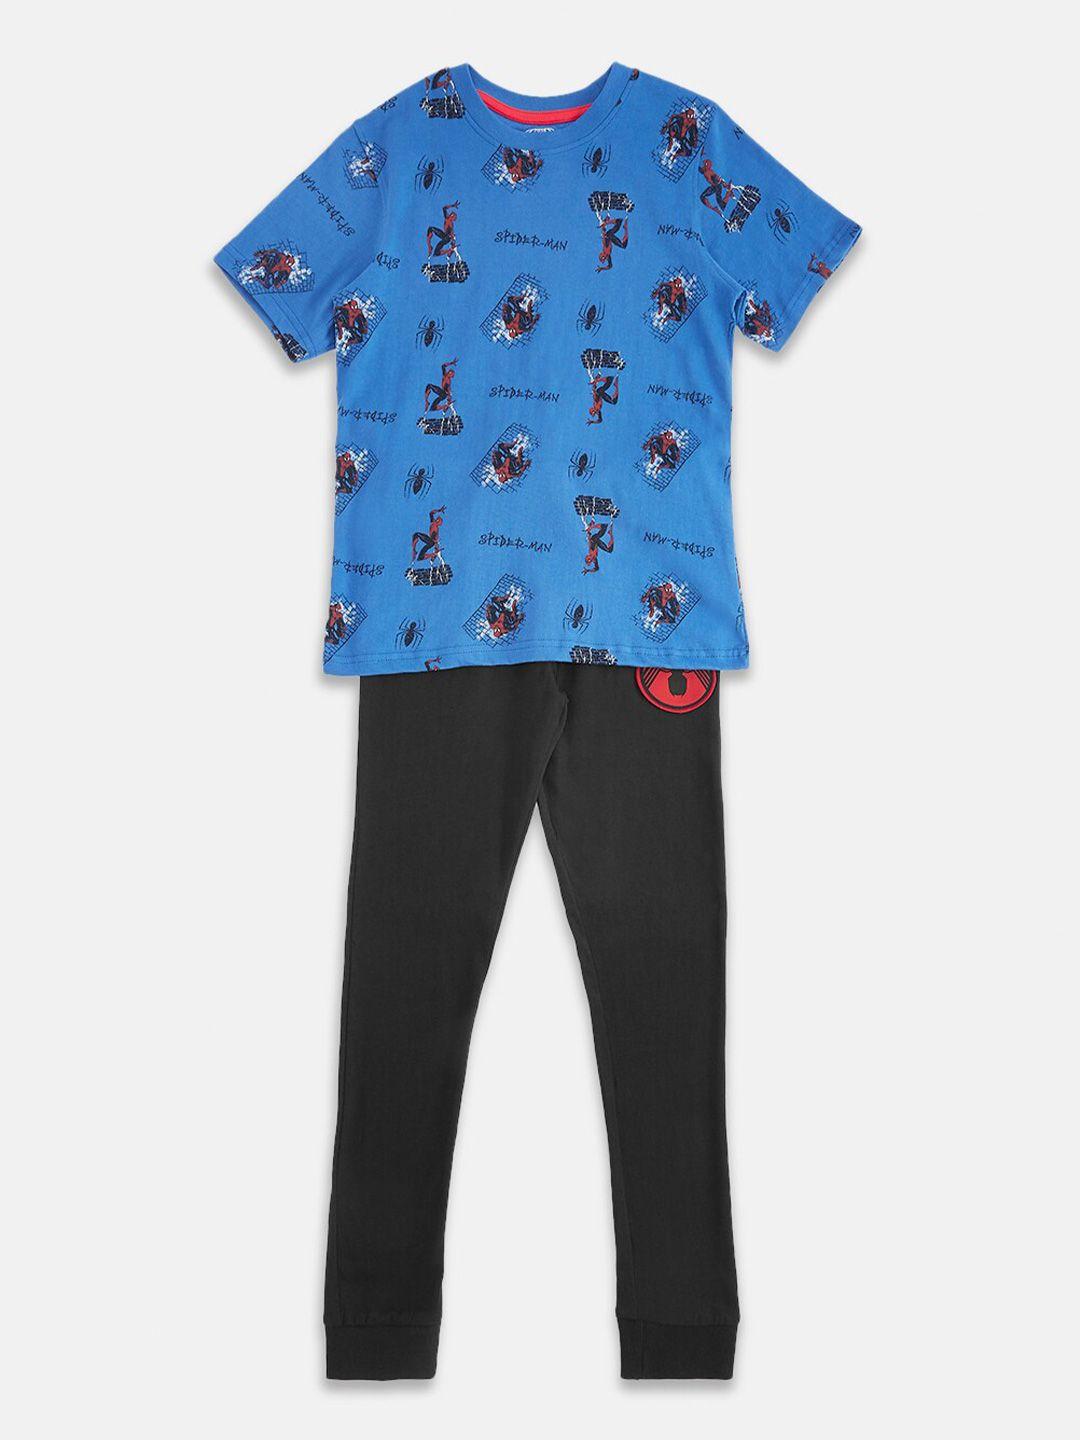 pantaloons-junior-boys-printed-pure-cotton-t-shirt-with-pyjamas